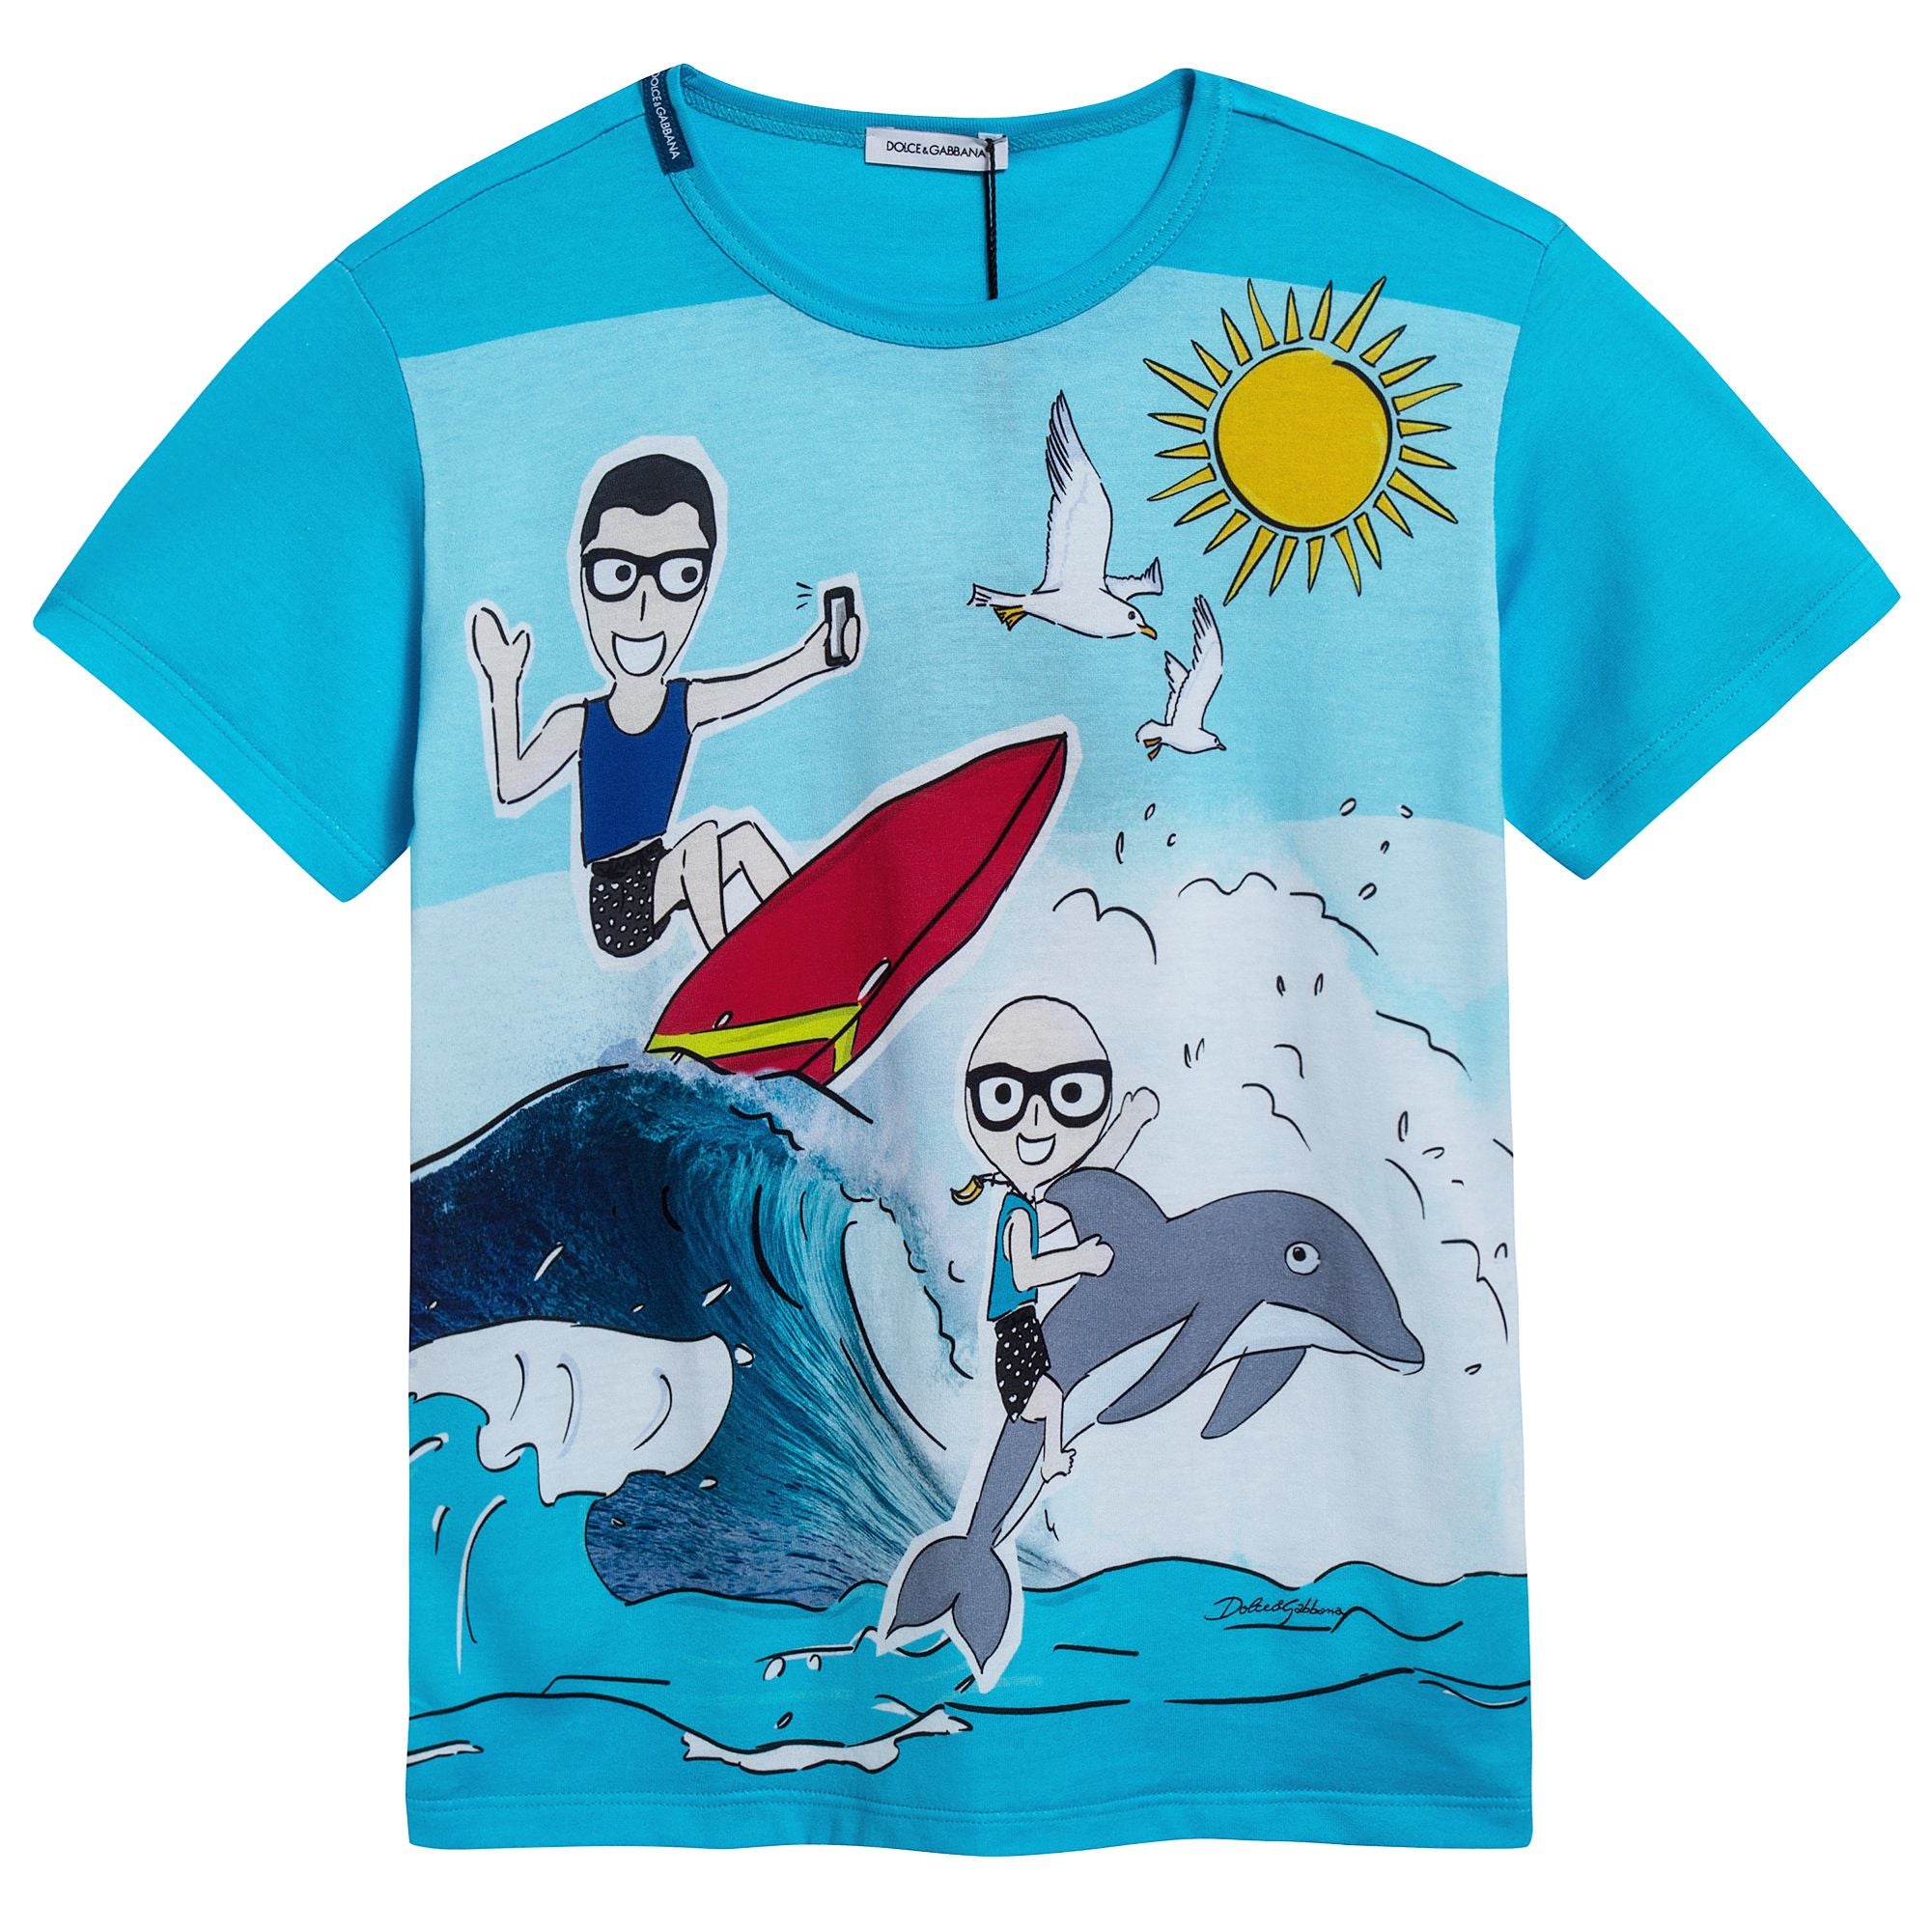 Boys "DG" Family Surfing T-Shirt